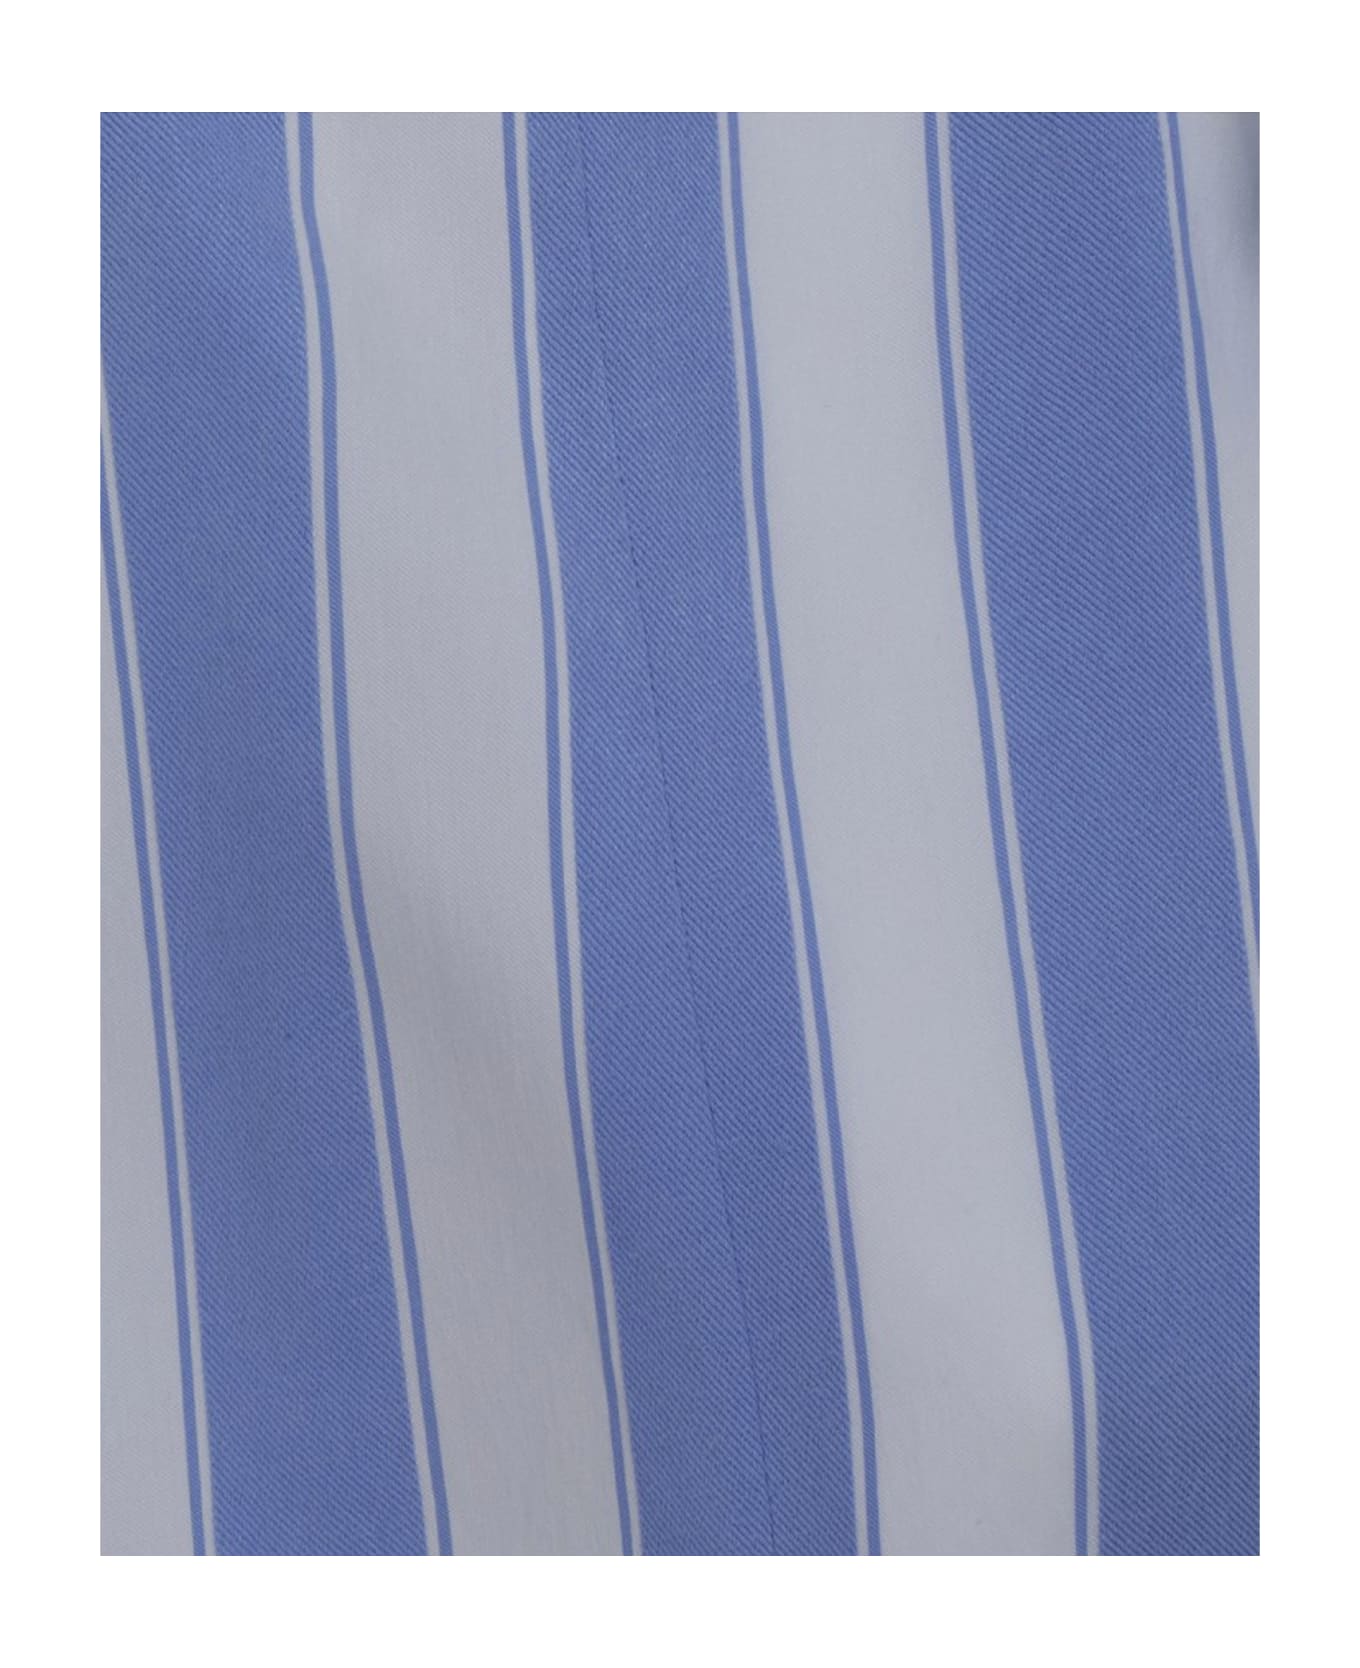 Balmain Striped Blouse - Blue